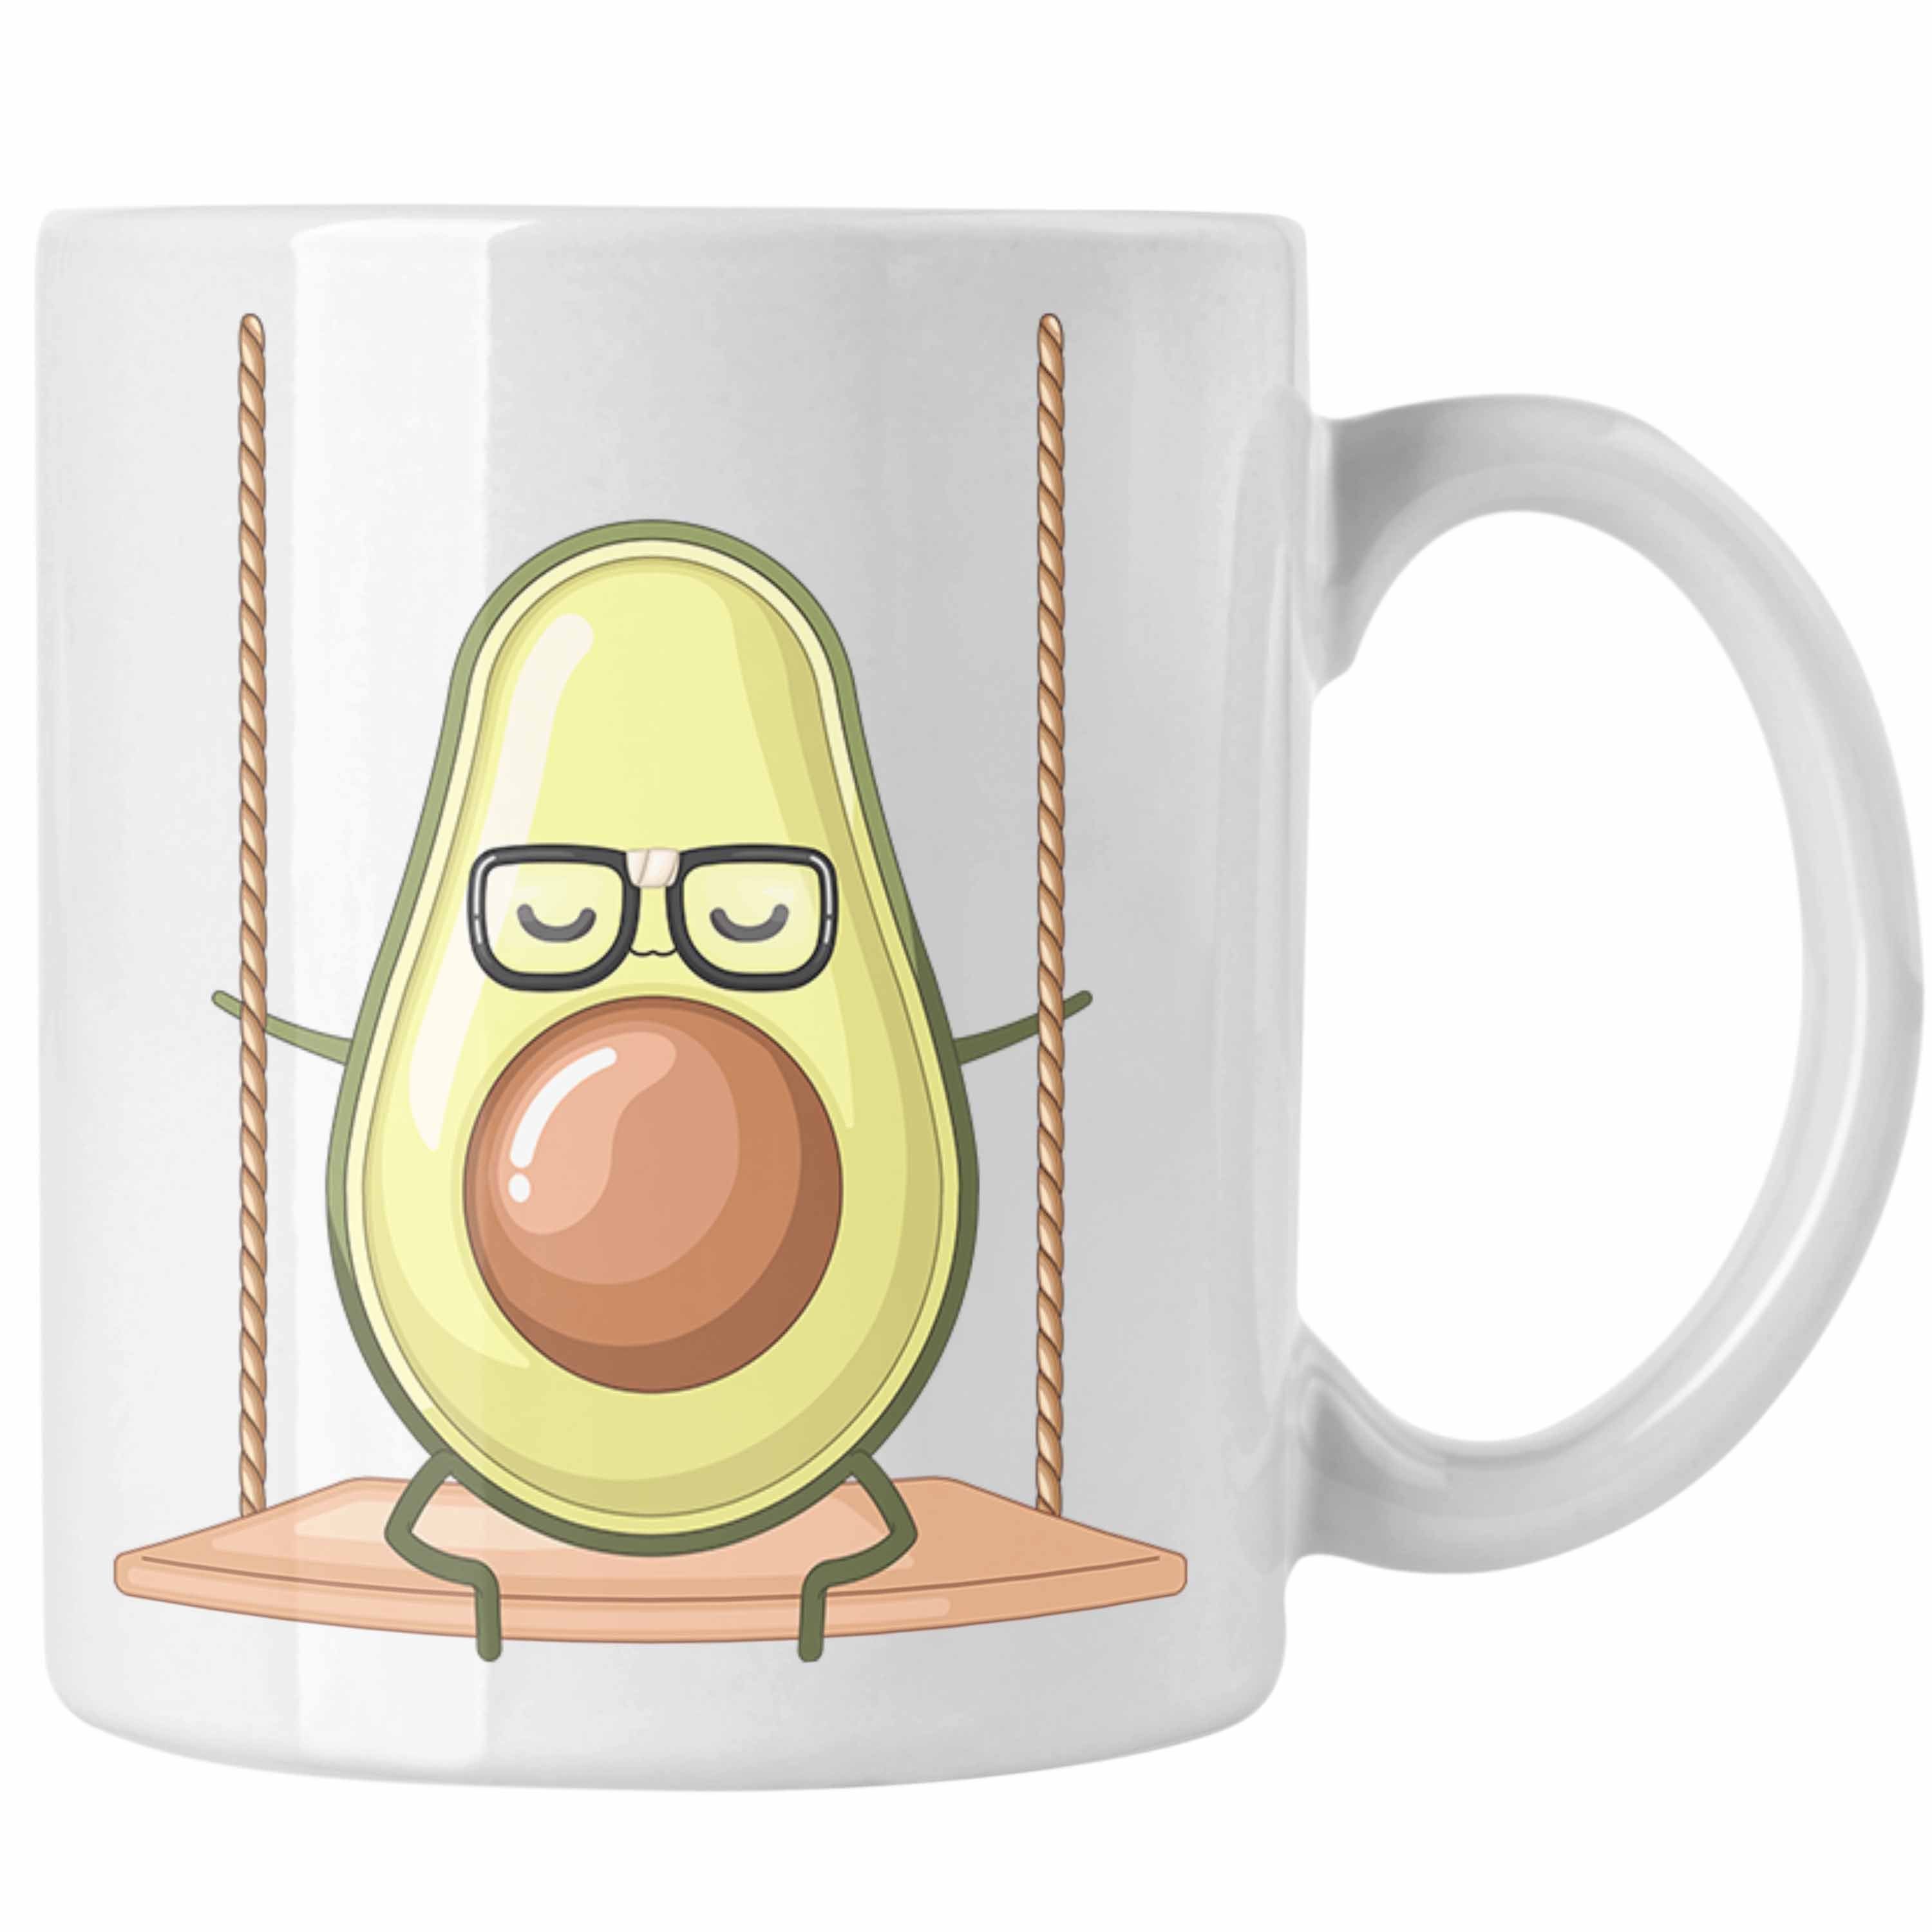 Trendation Tasse Lustige Tasse mit Avocado-Motiv - Originelle Geschenkidee für Avocado- Weiss